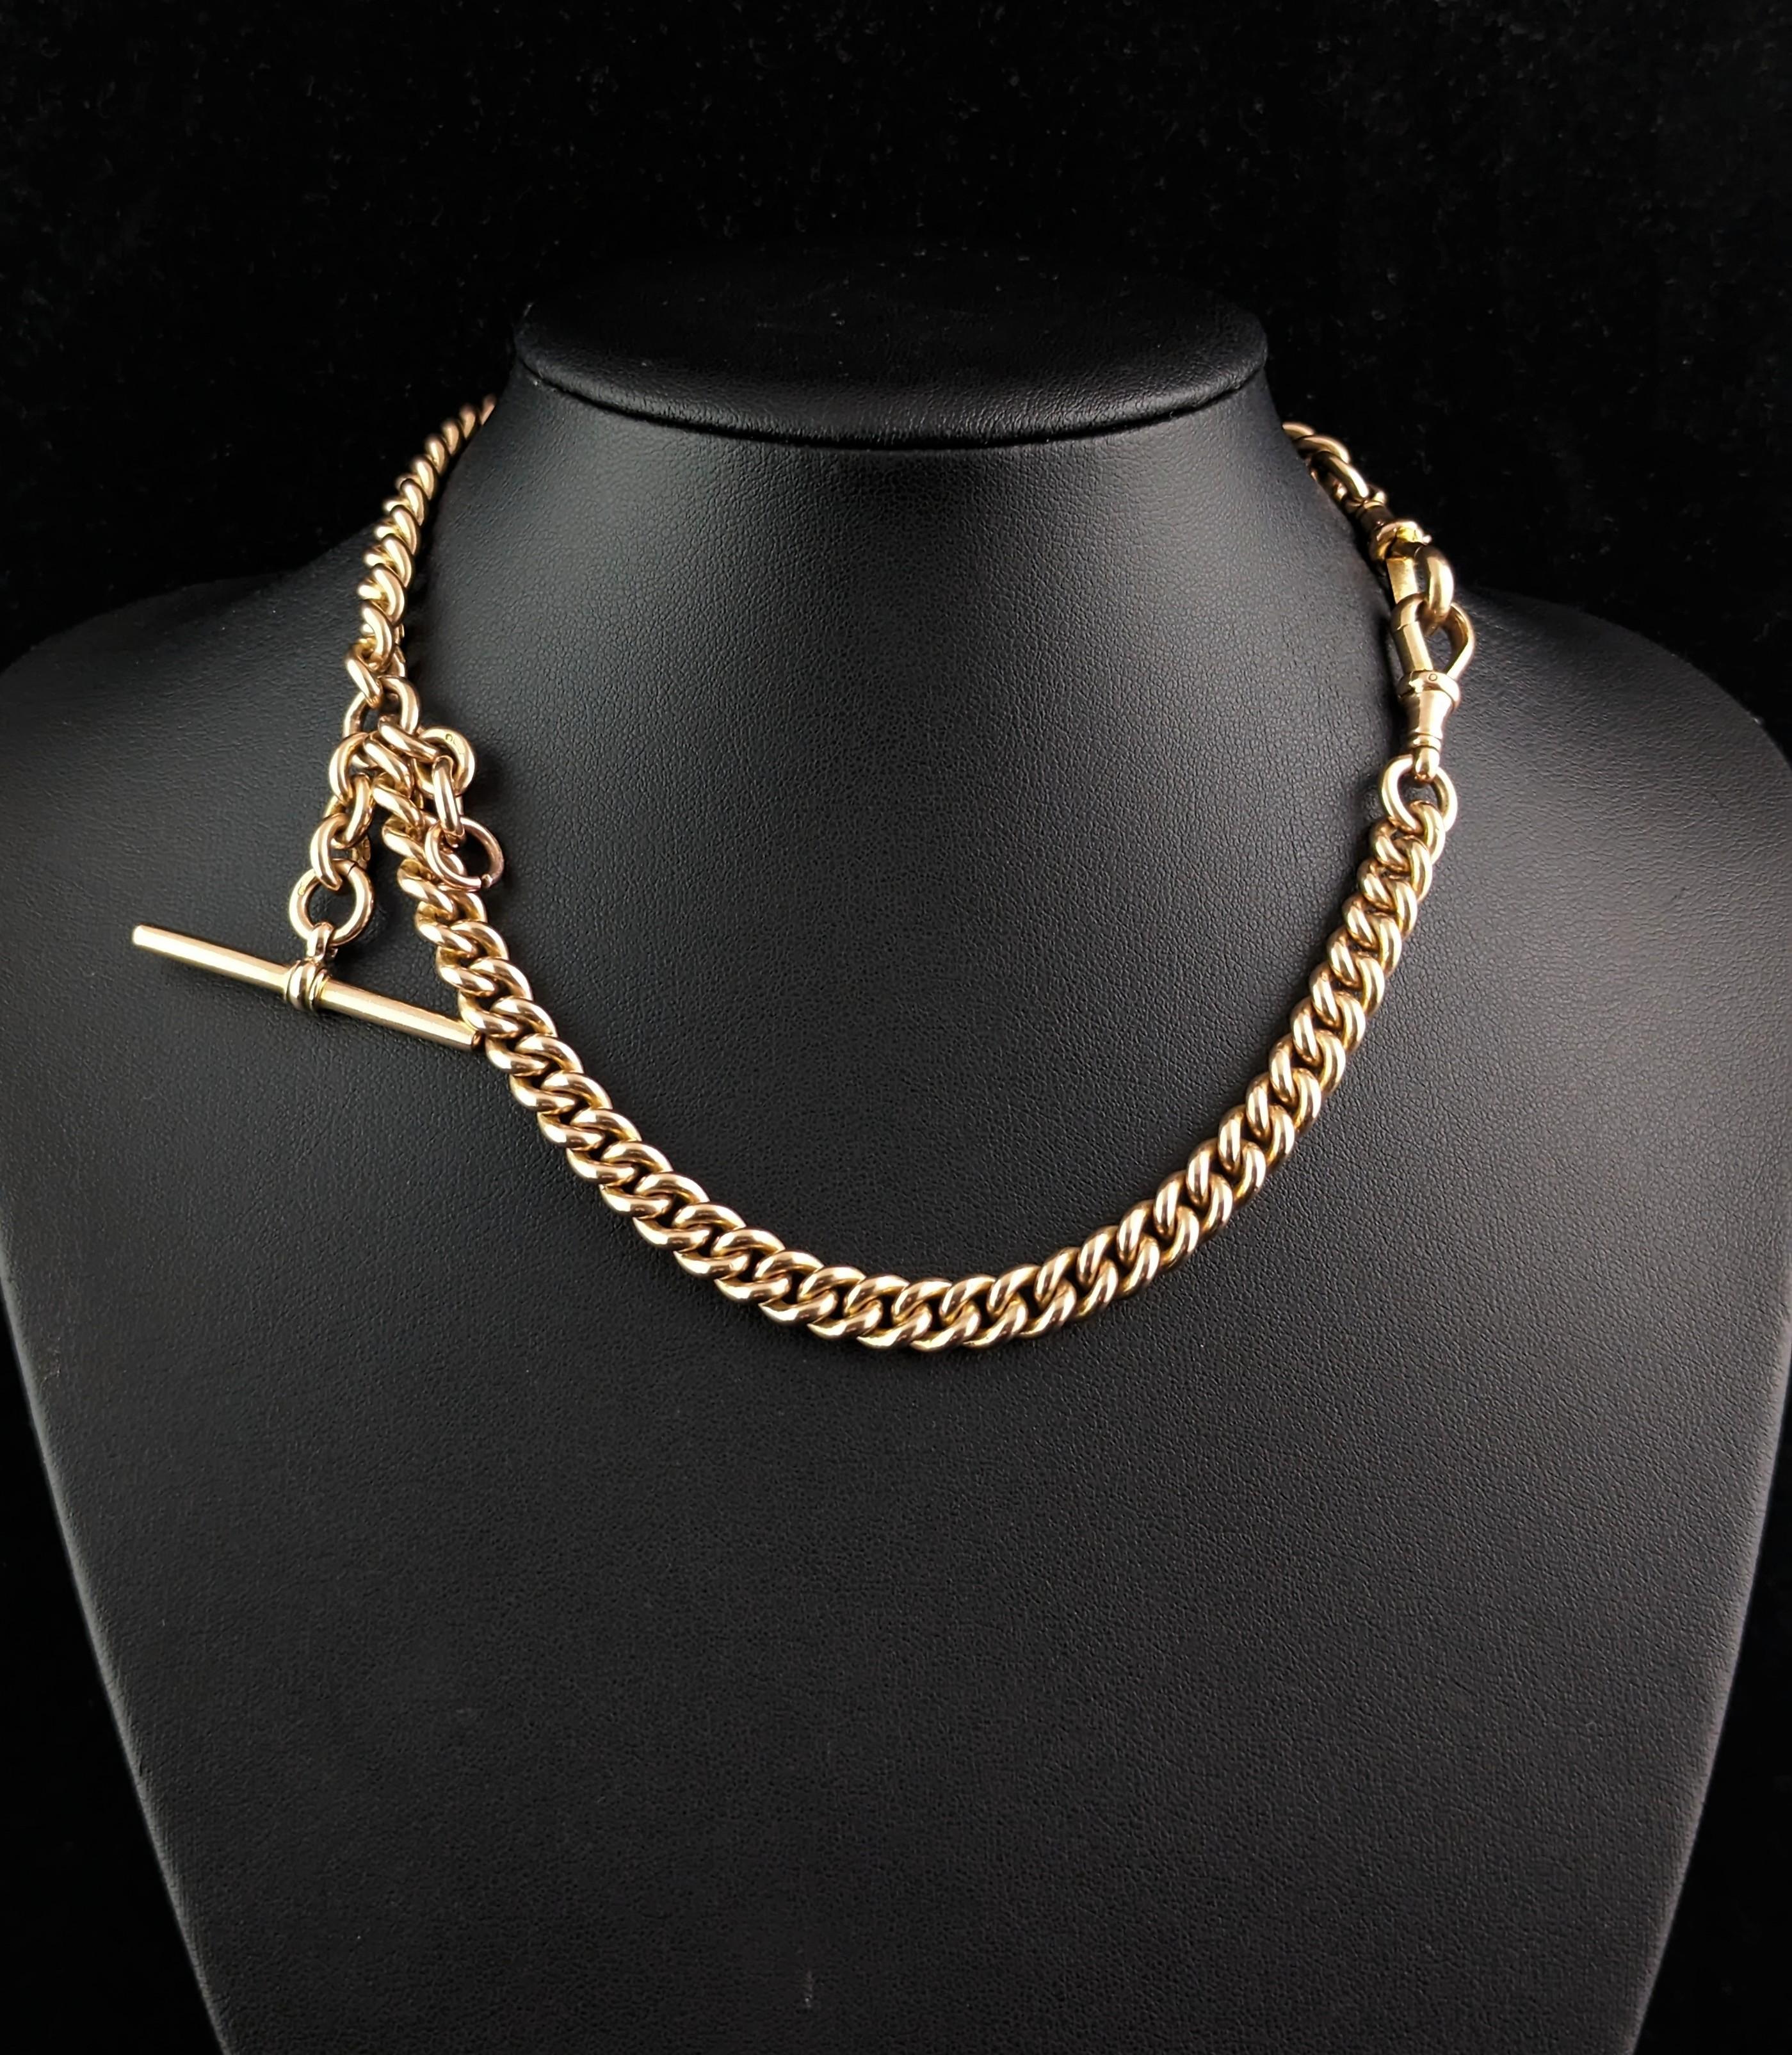 Antique 9k gold Albert chain necklace, watch chain, Heavy  9